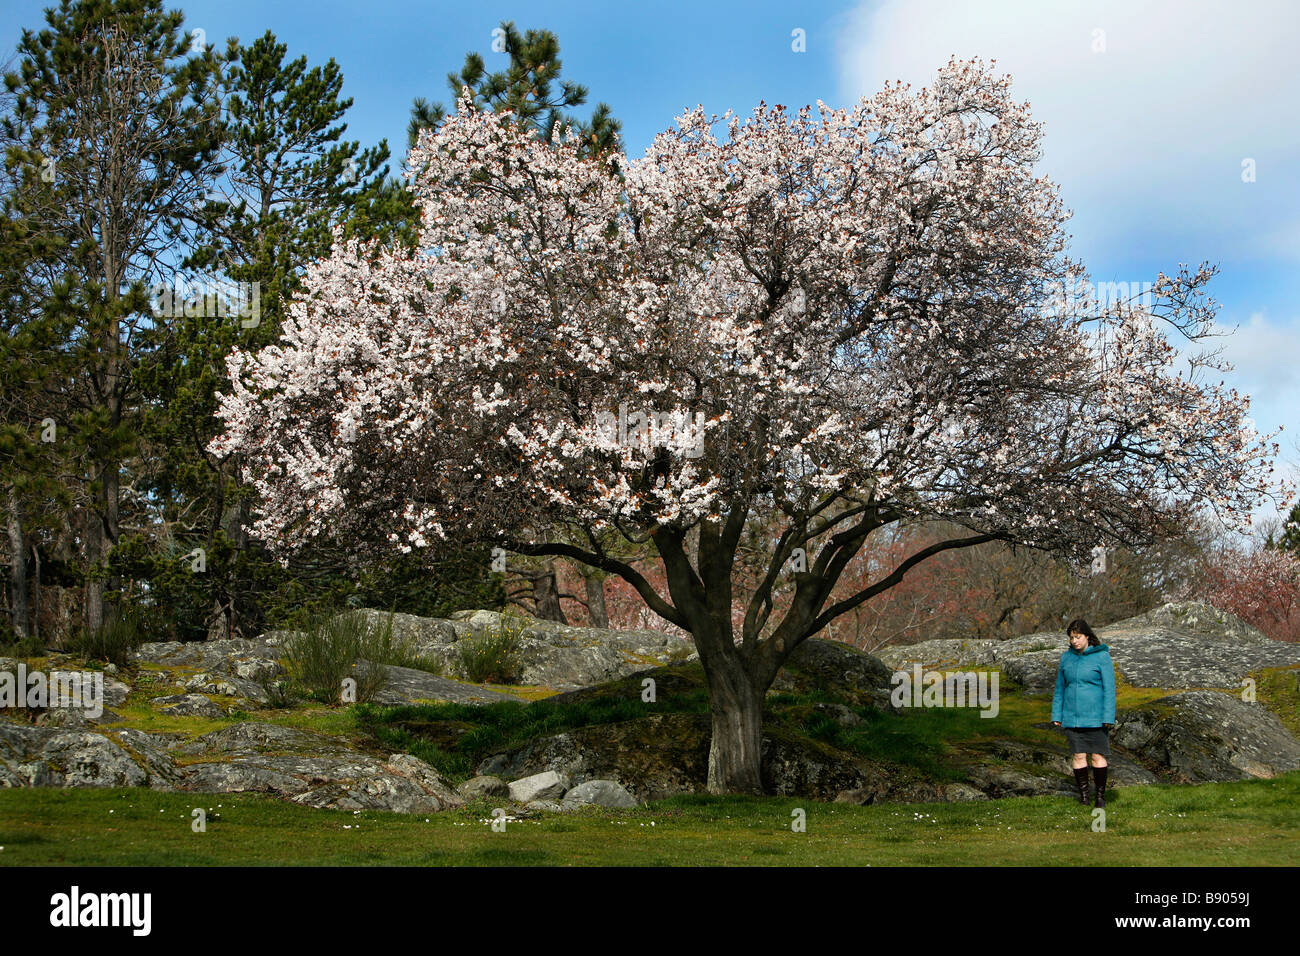 Una mujer joven se encuentra debajo de un árbol de cerezo en flor en Beacon Hill Park, Victoria, British Columbia, Canadá, en la temporada de primavera. Foto de stock